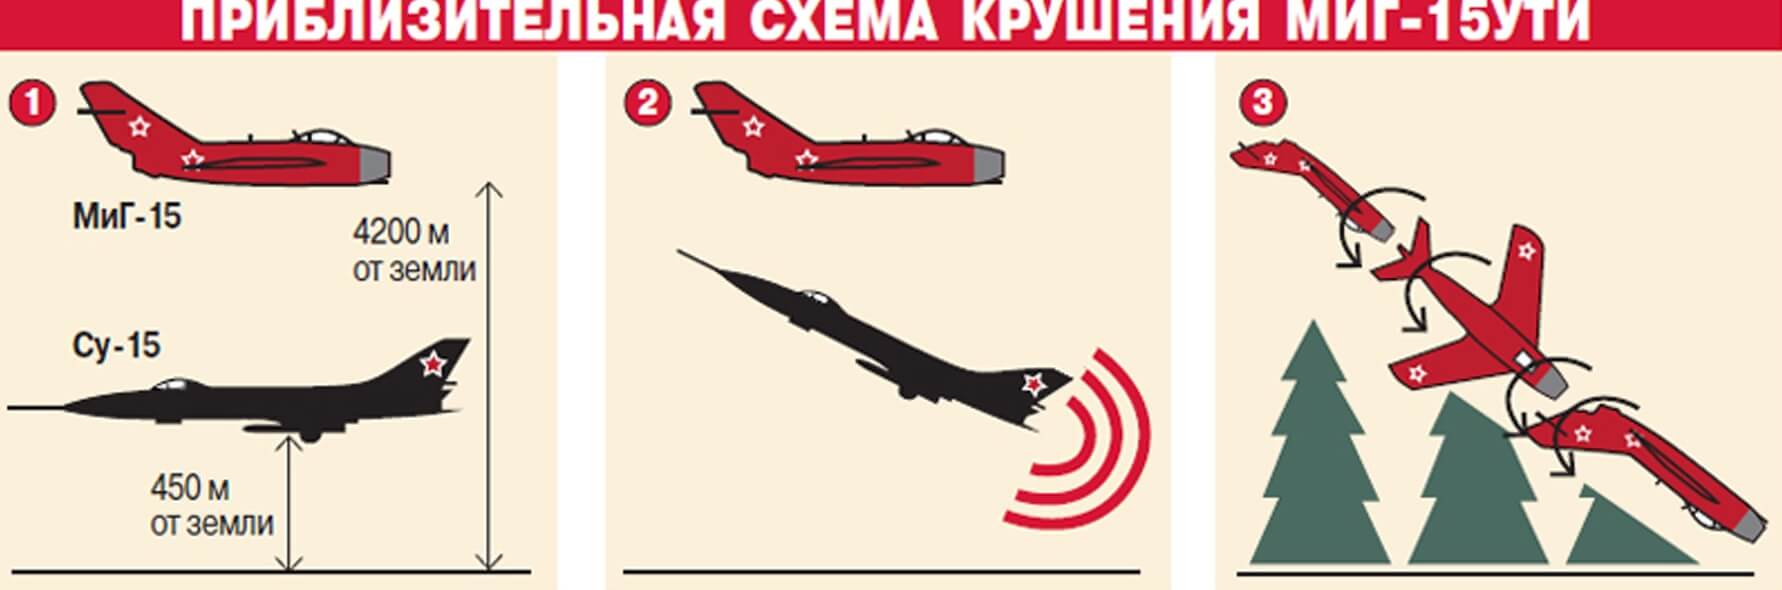 Из-за чего разбился самолет Гагарина. Примерная схема крушения самолета МиГ-15. Фото.